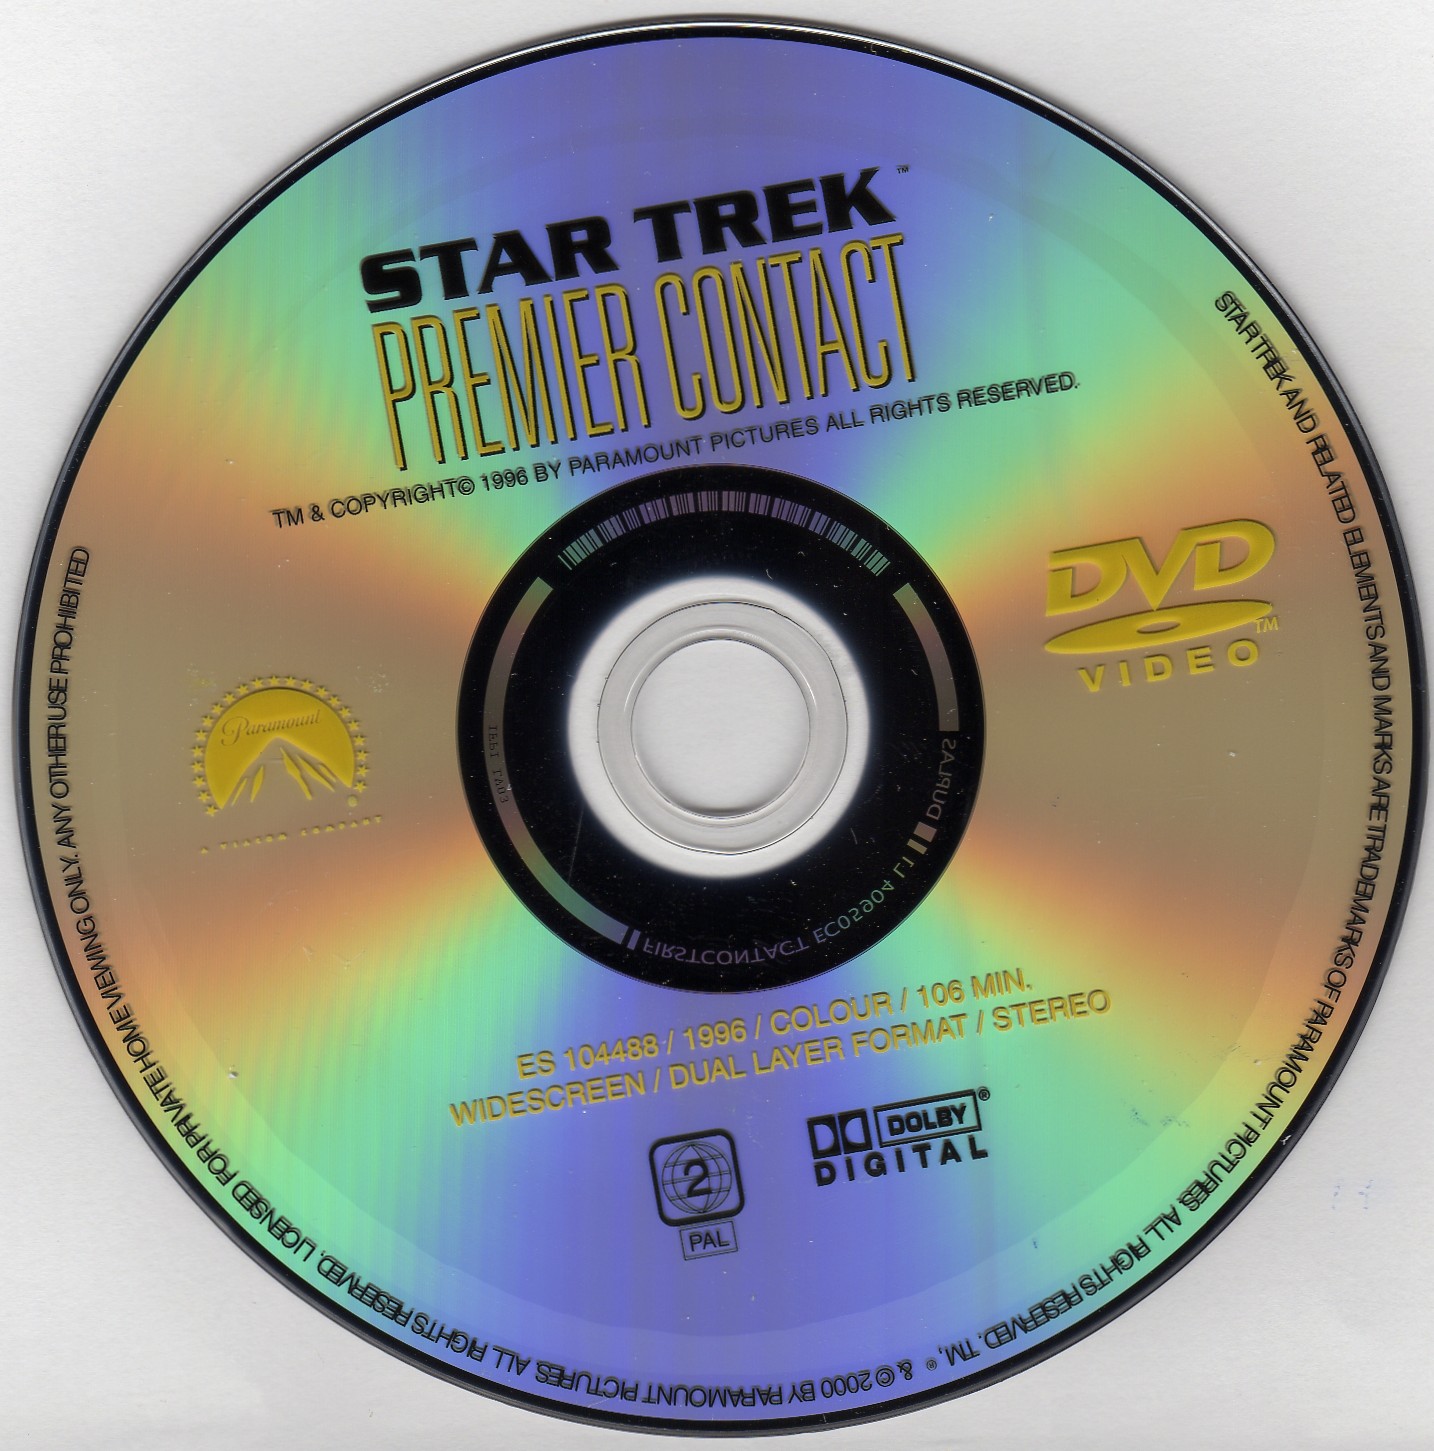 Star Trek premier contact